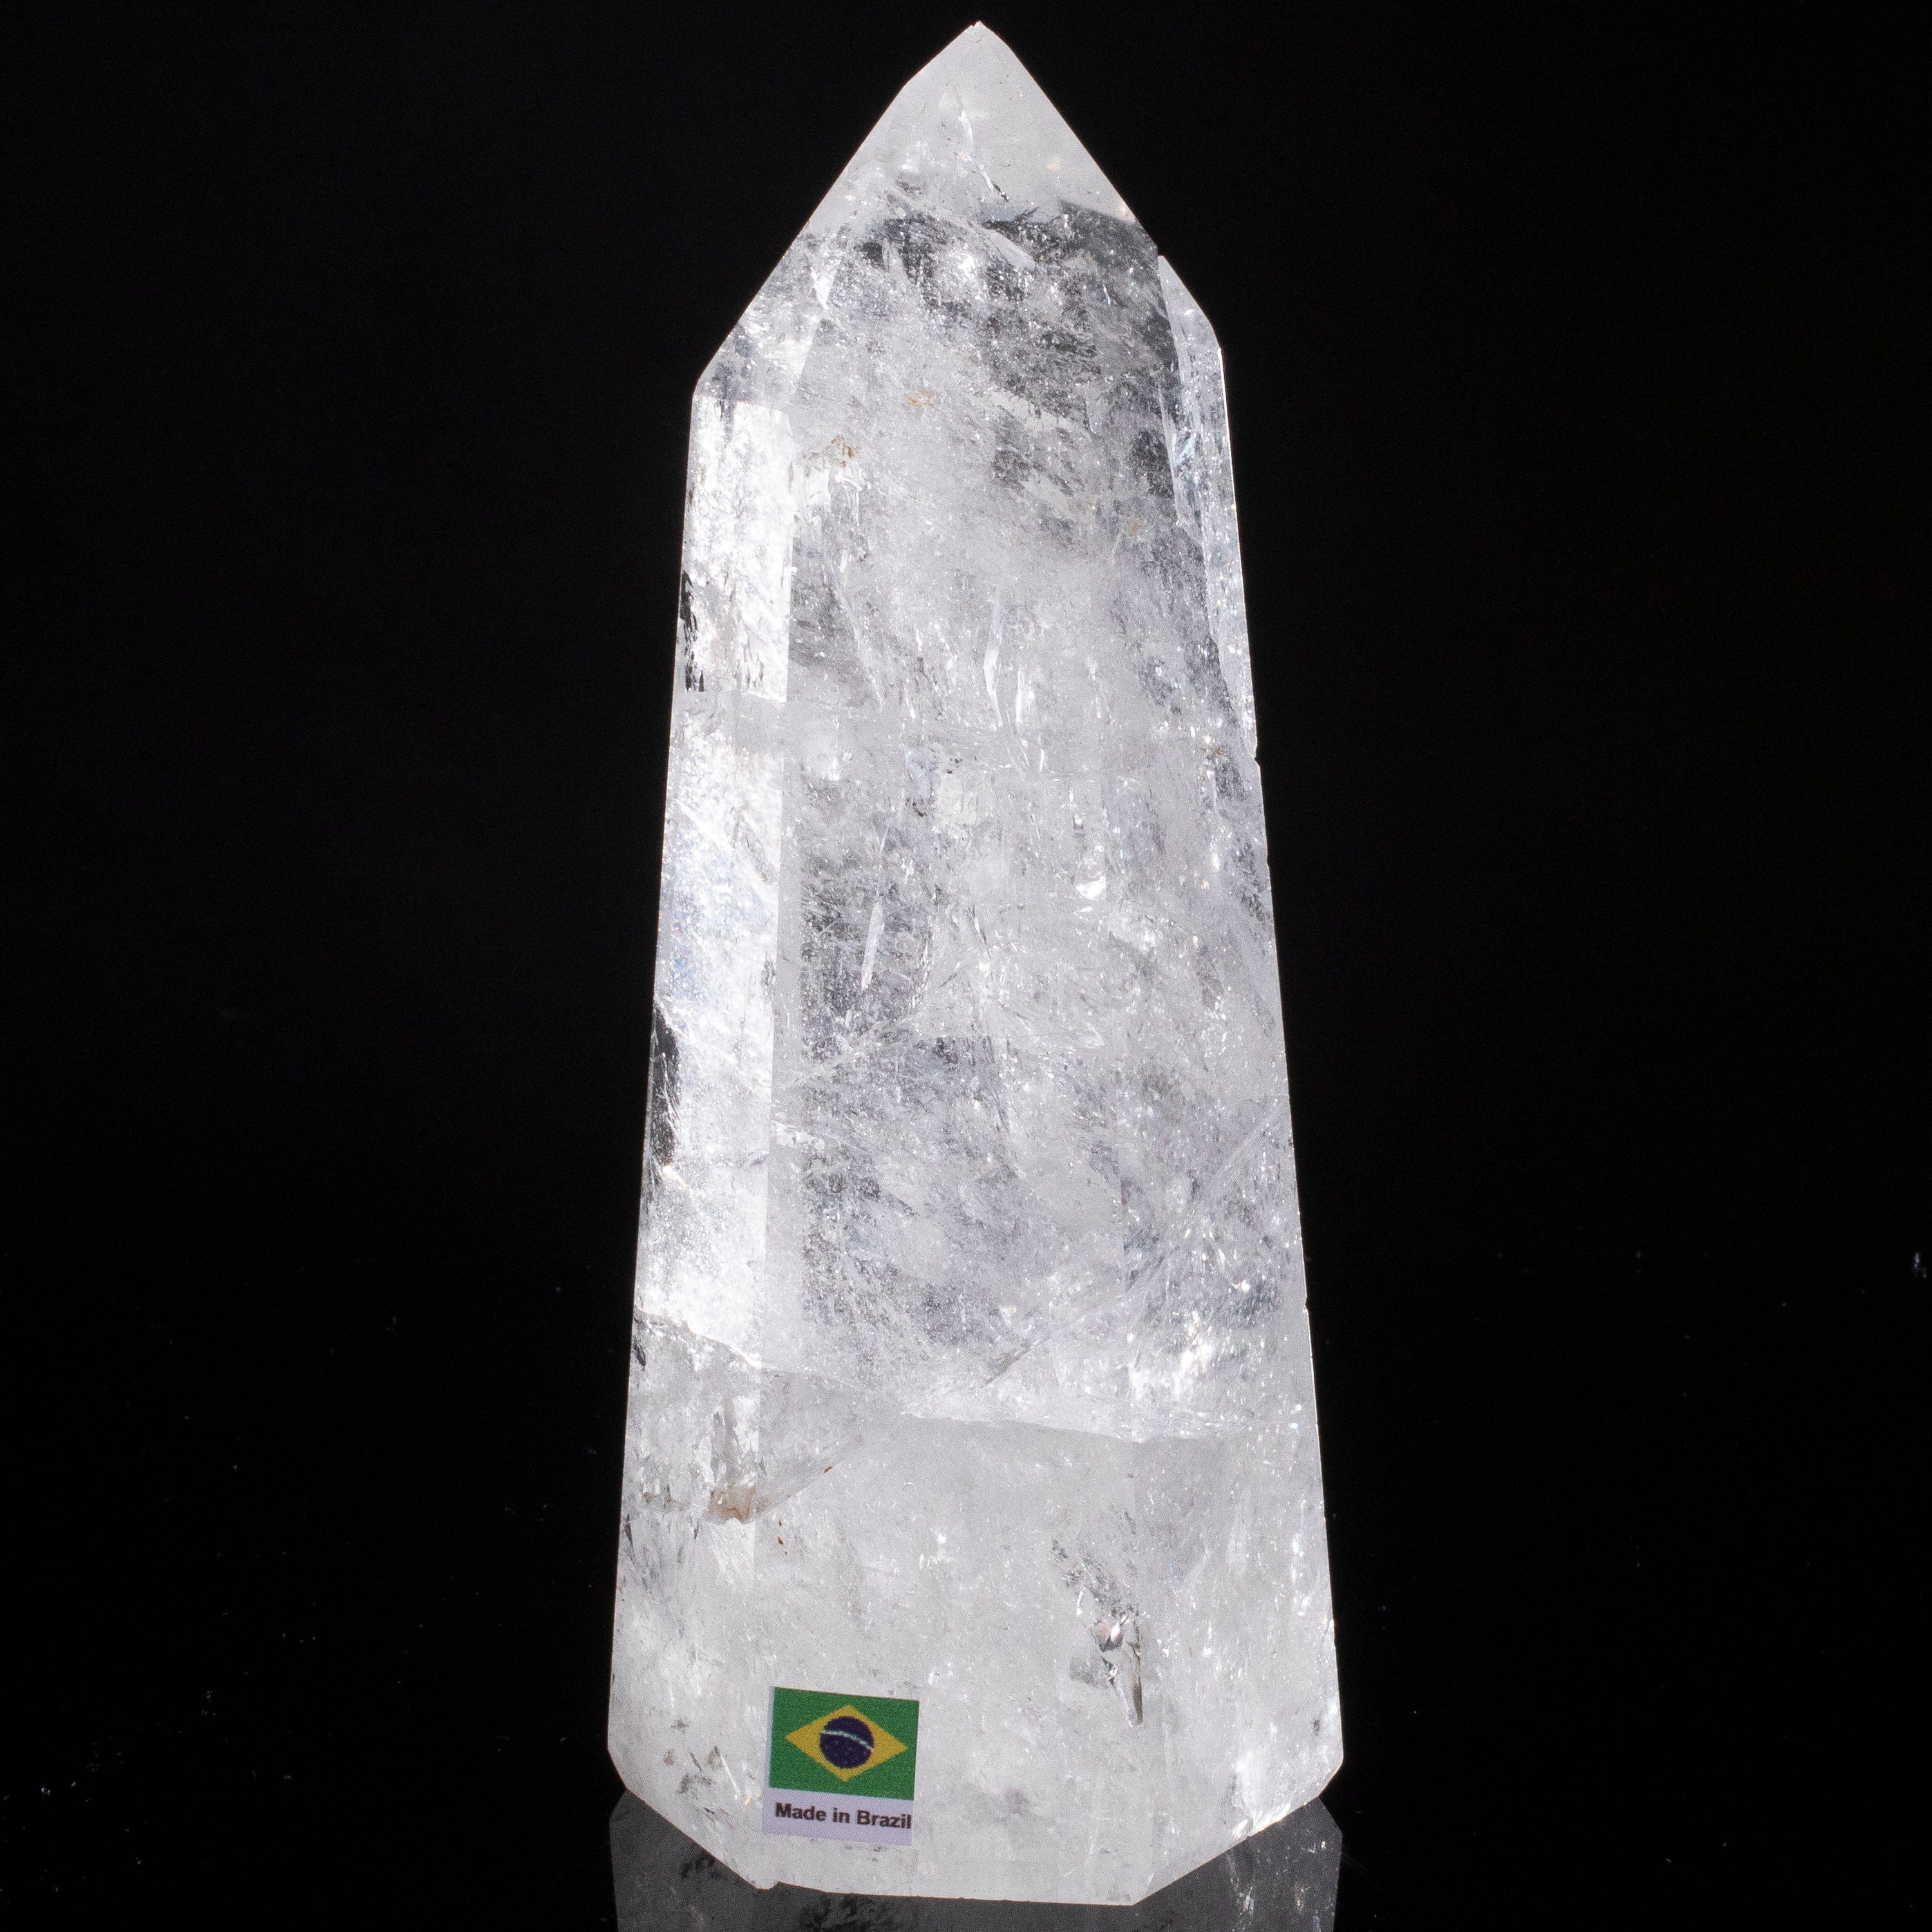 Kalifano Quartz Natural Quartz Obelisk from Brazil - 7.5" / 1,063 grams QZ1500.001